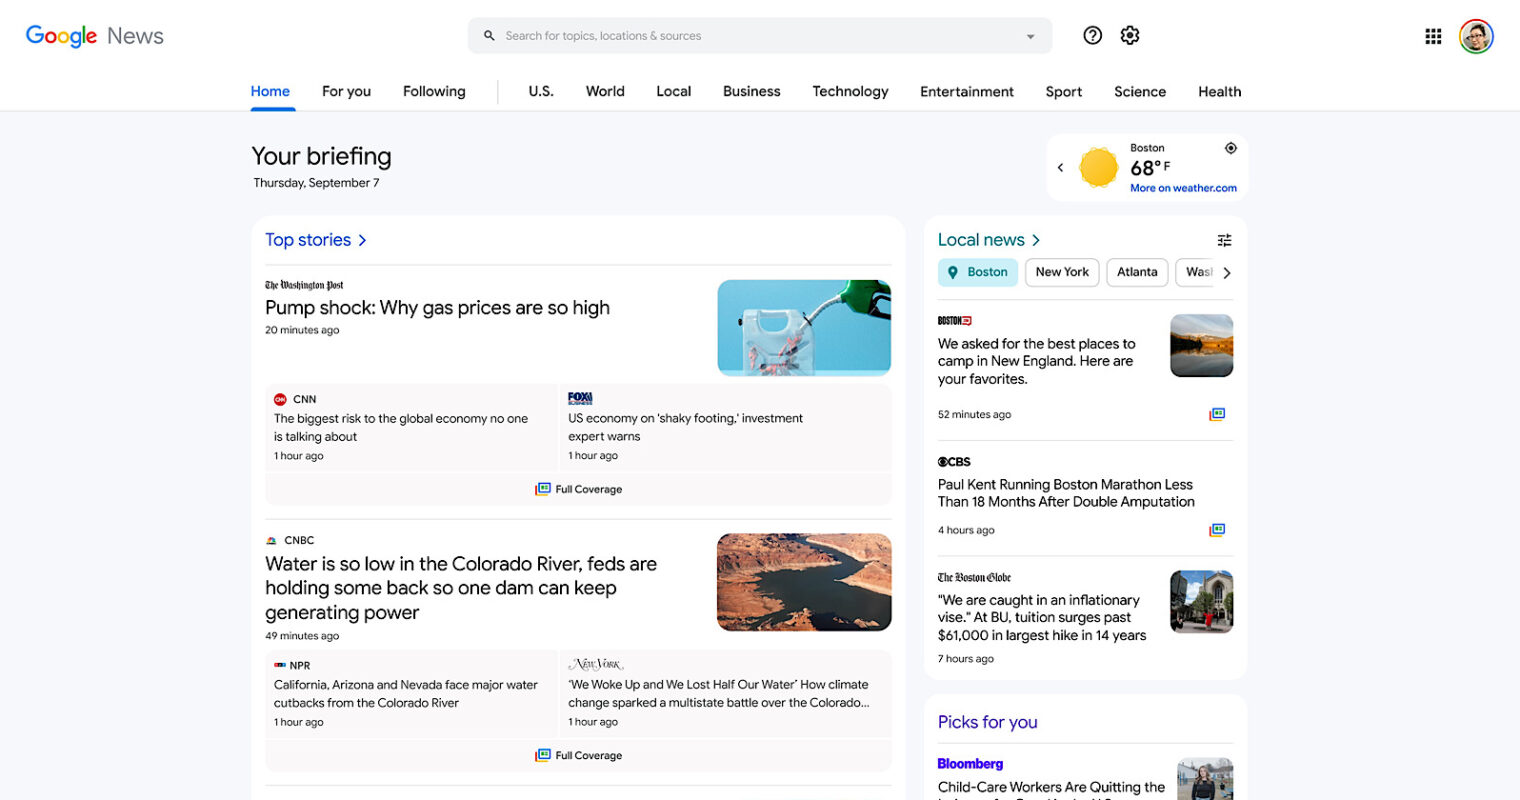 Giao diện mới của Google News trên desktop có gì khác biệt? 